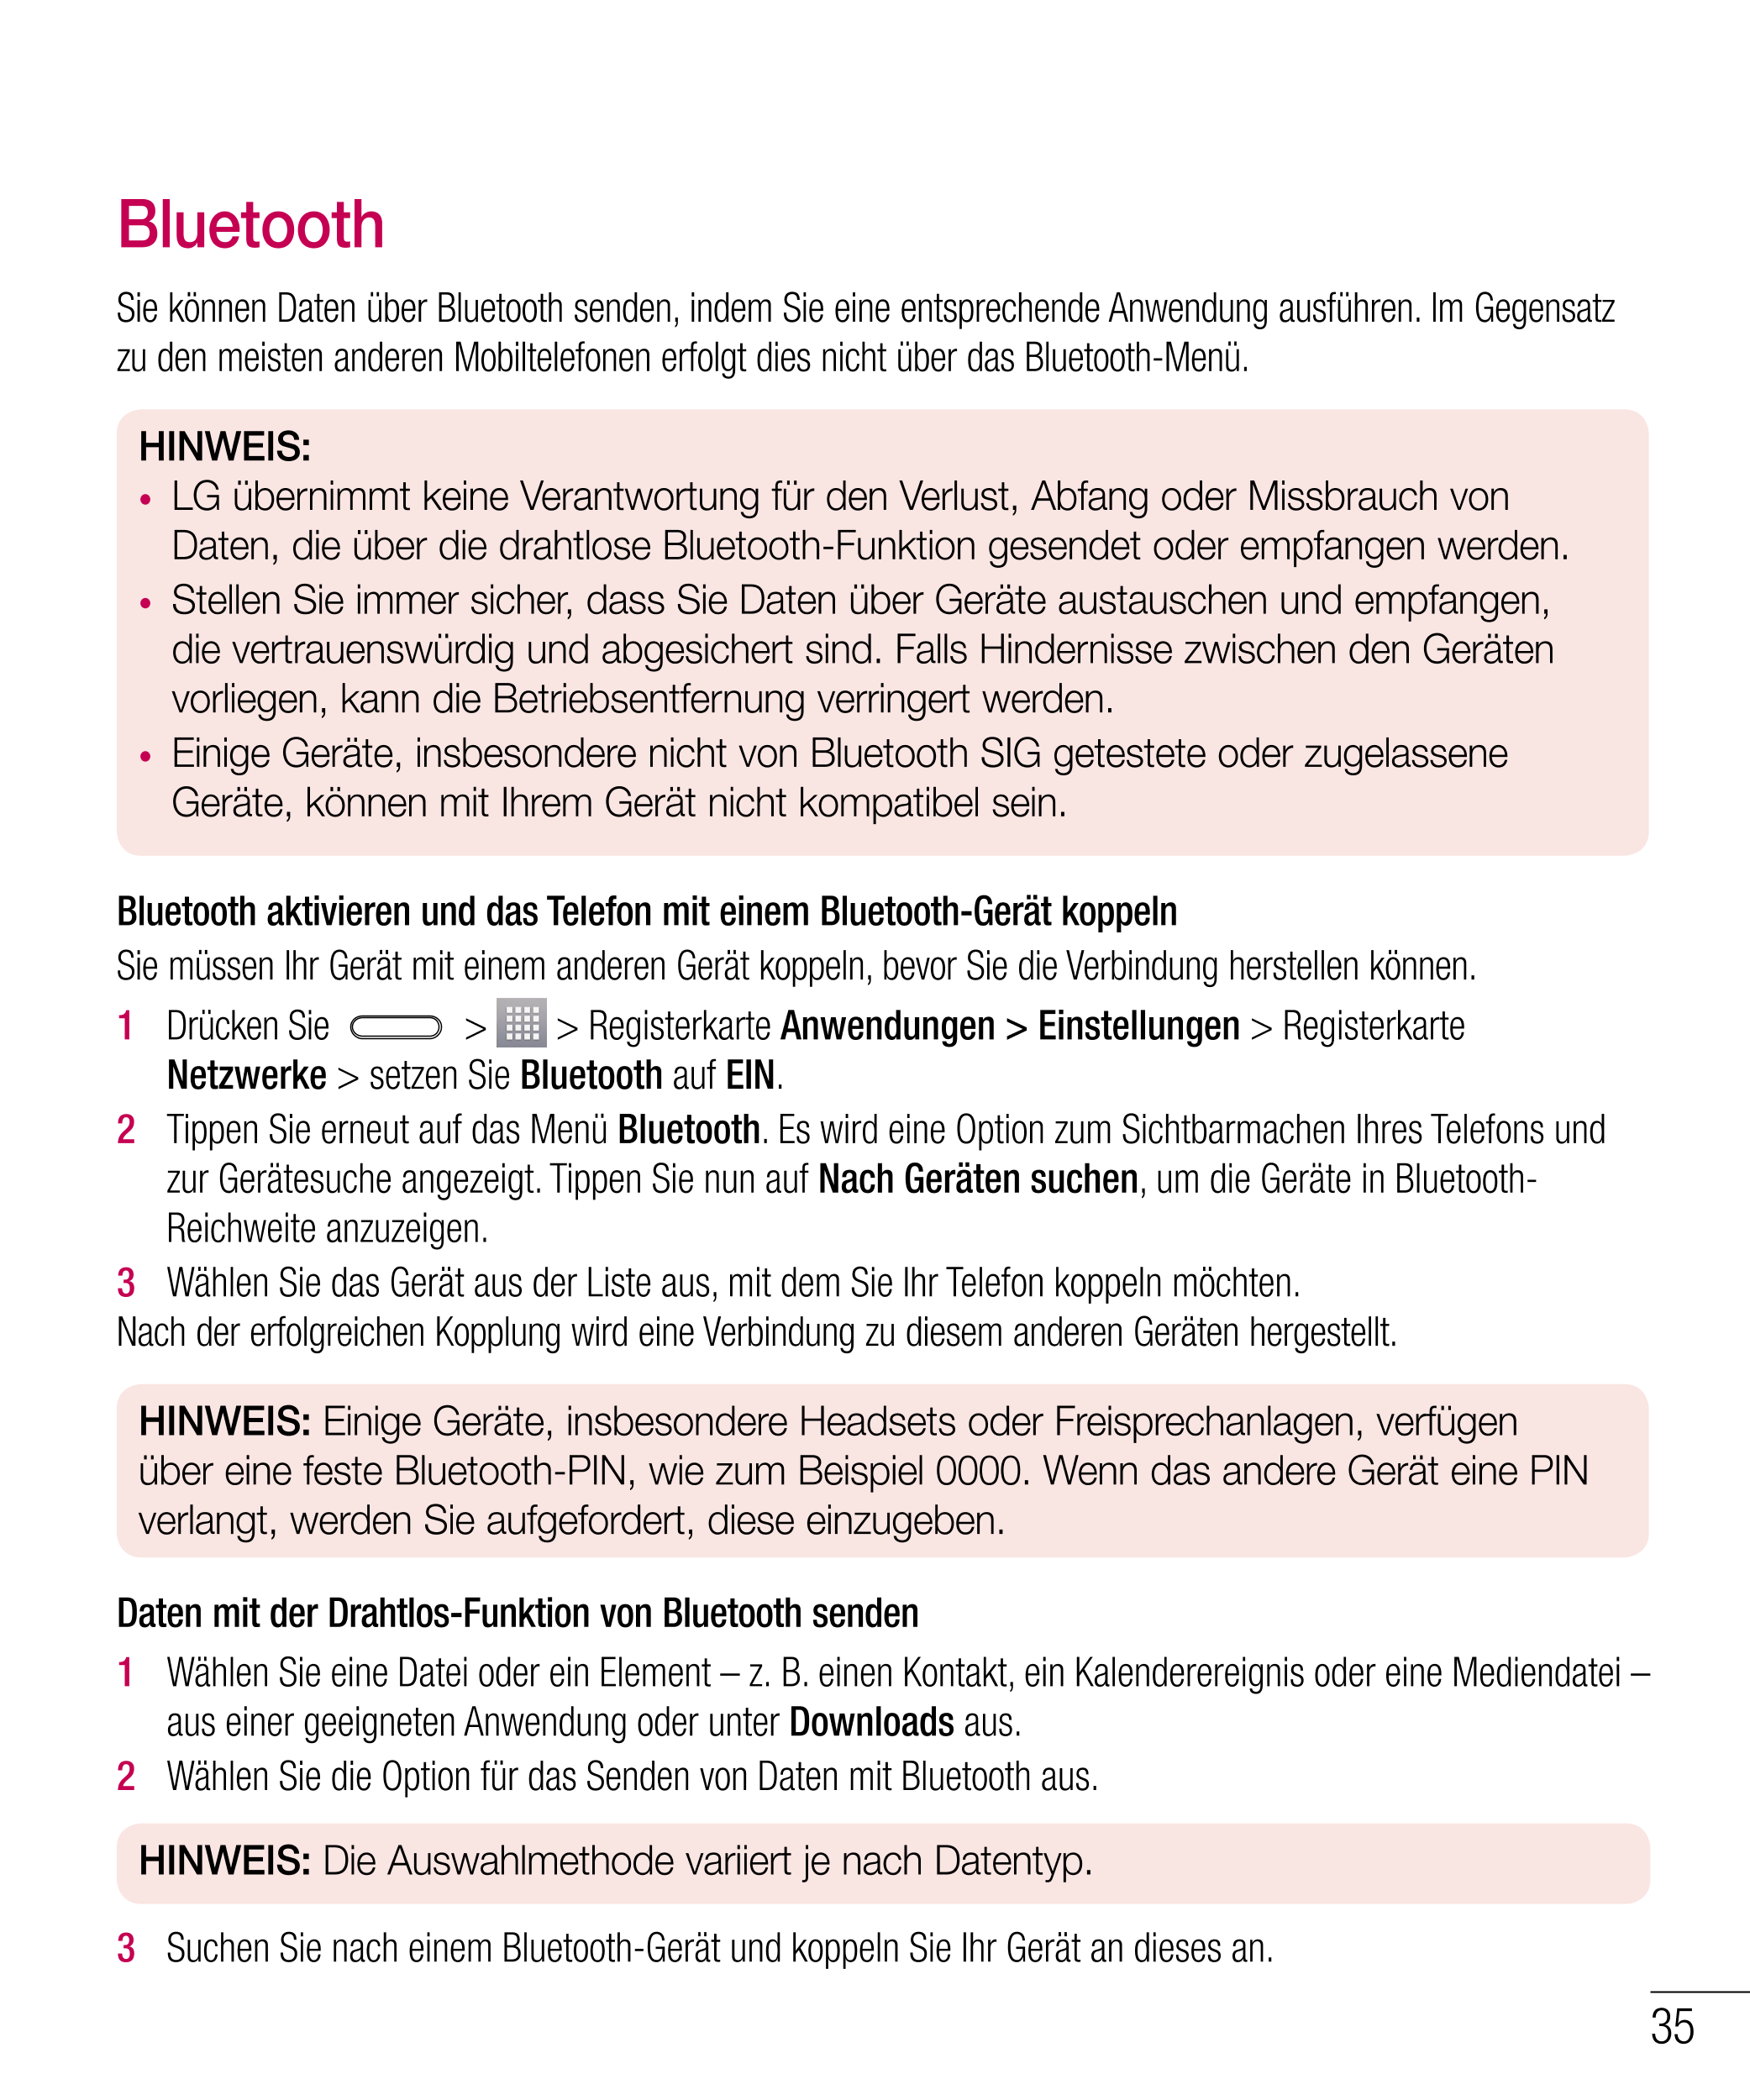 Bluetooth
Sie können Daten über Bluetooth senden, indem Sie eine entsprechende Anwendung ausführen. Im Gegensatz 
zu den meisten